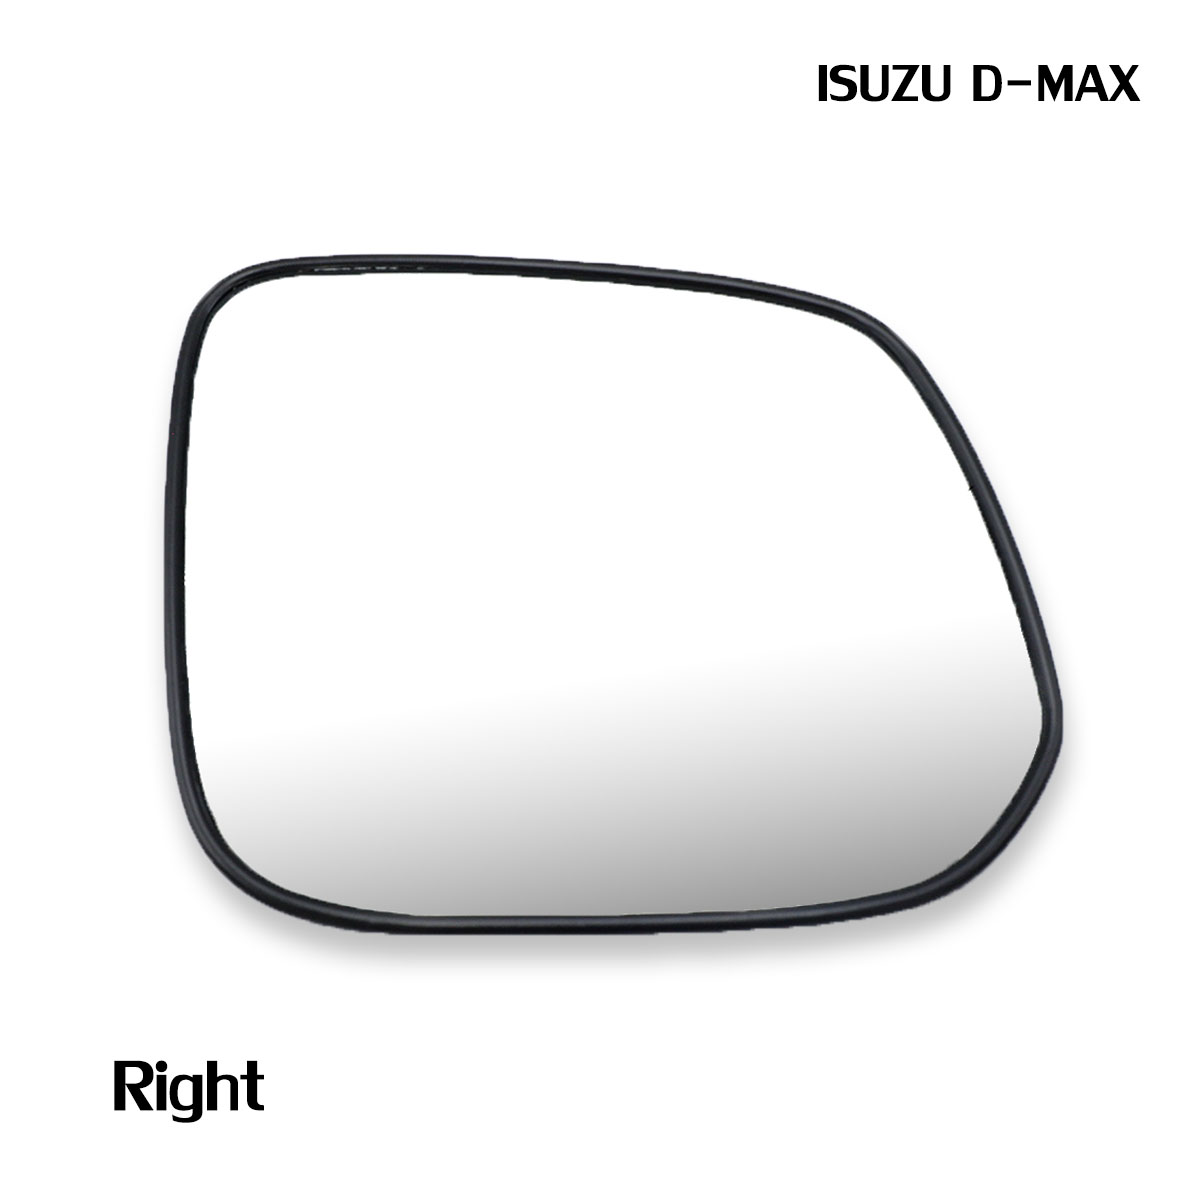 เนื้อเลนส์กระจก ข้าง ขวา ใส่ Isuzu D-Max รุ่นไม่ไฟฟ้า Right Wing Side Door Mirror Glass Len No Electric Mirror Isuzu 2012-2019 มีบริการเก็บเงินปลายทาง